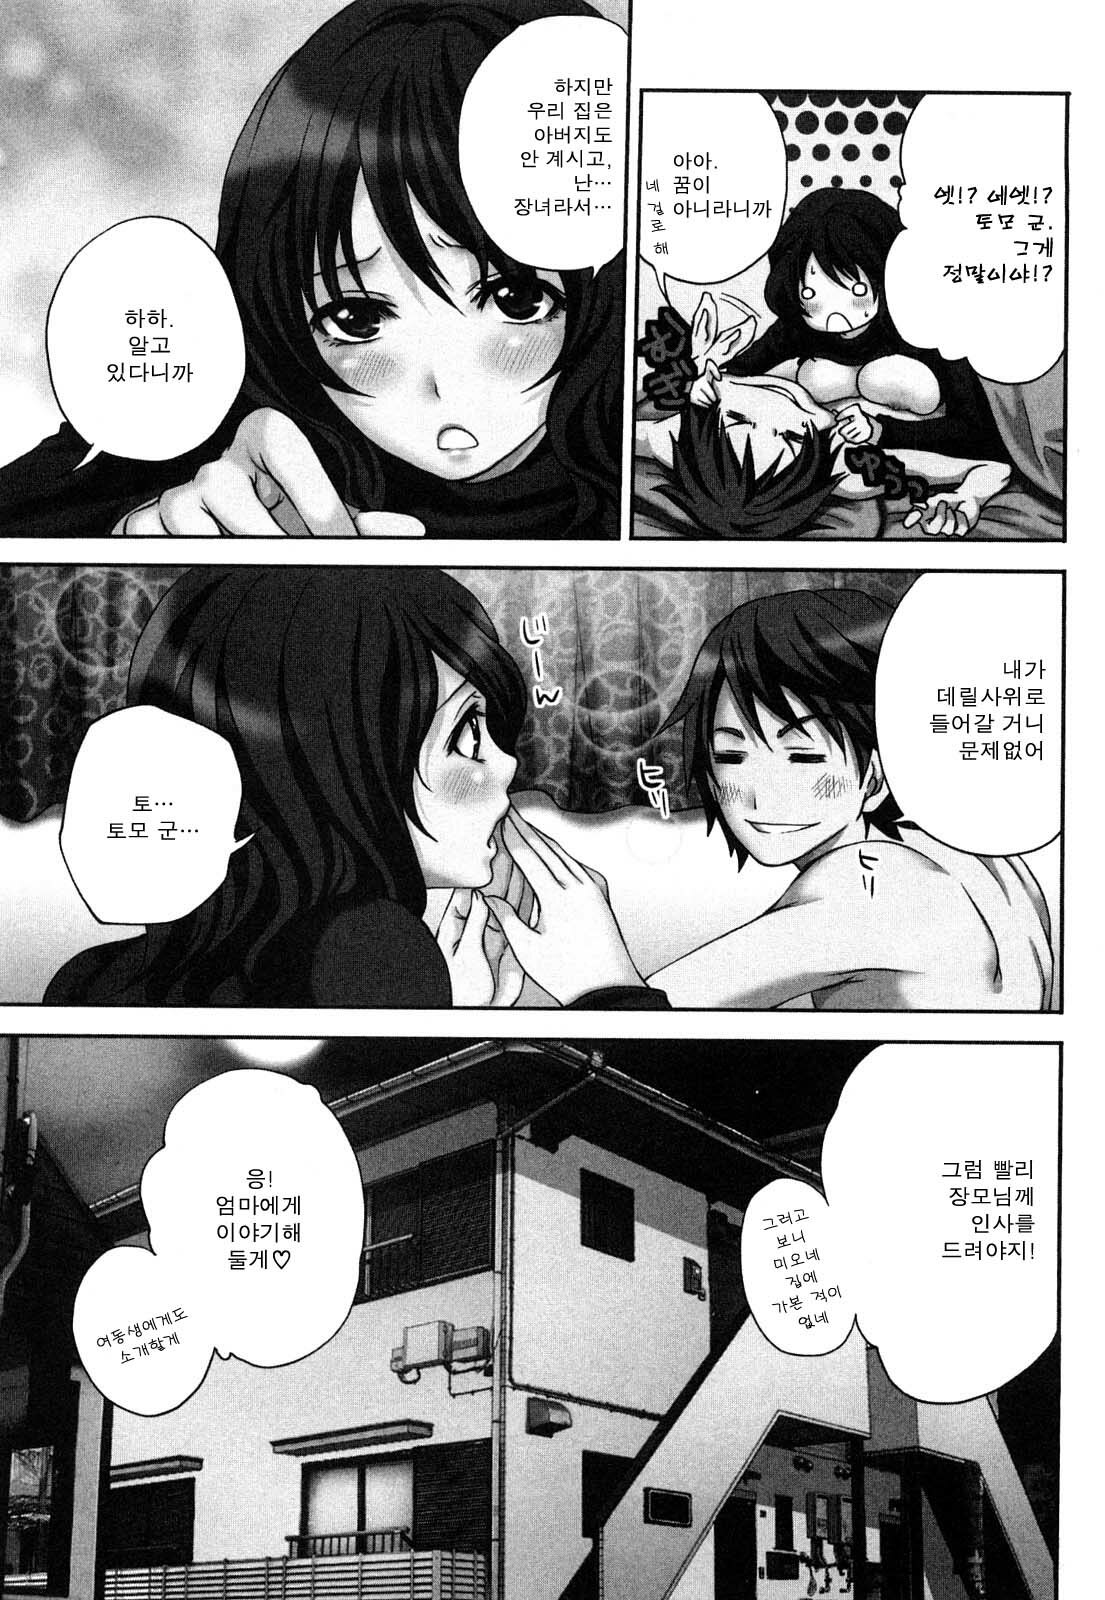 [Miyahara Ayumu] Shimoeda-sanchi no Akarui Shokutaku - The Shimoedas, a poor but happy circle. [Korean] page 8 full